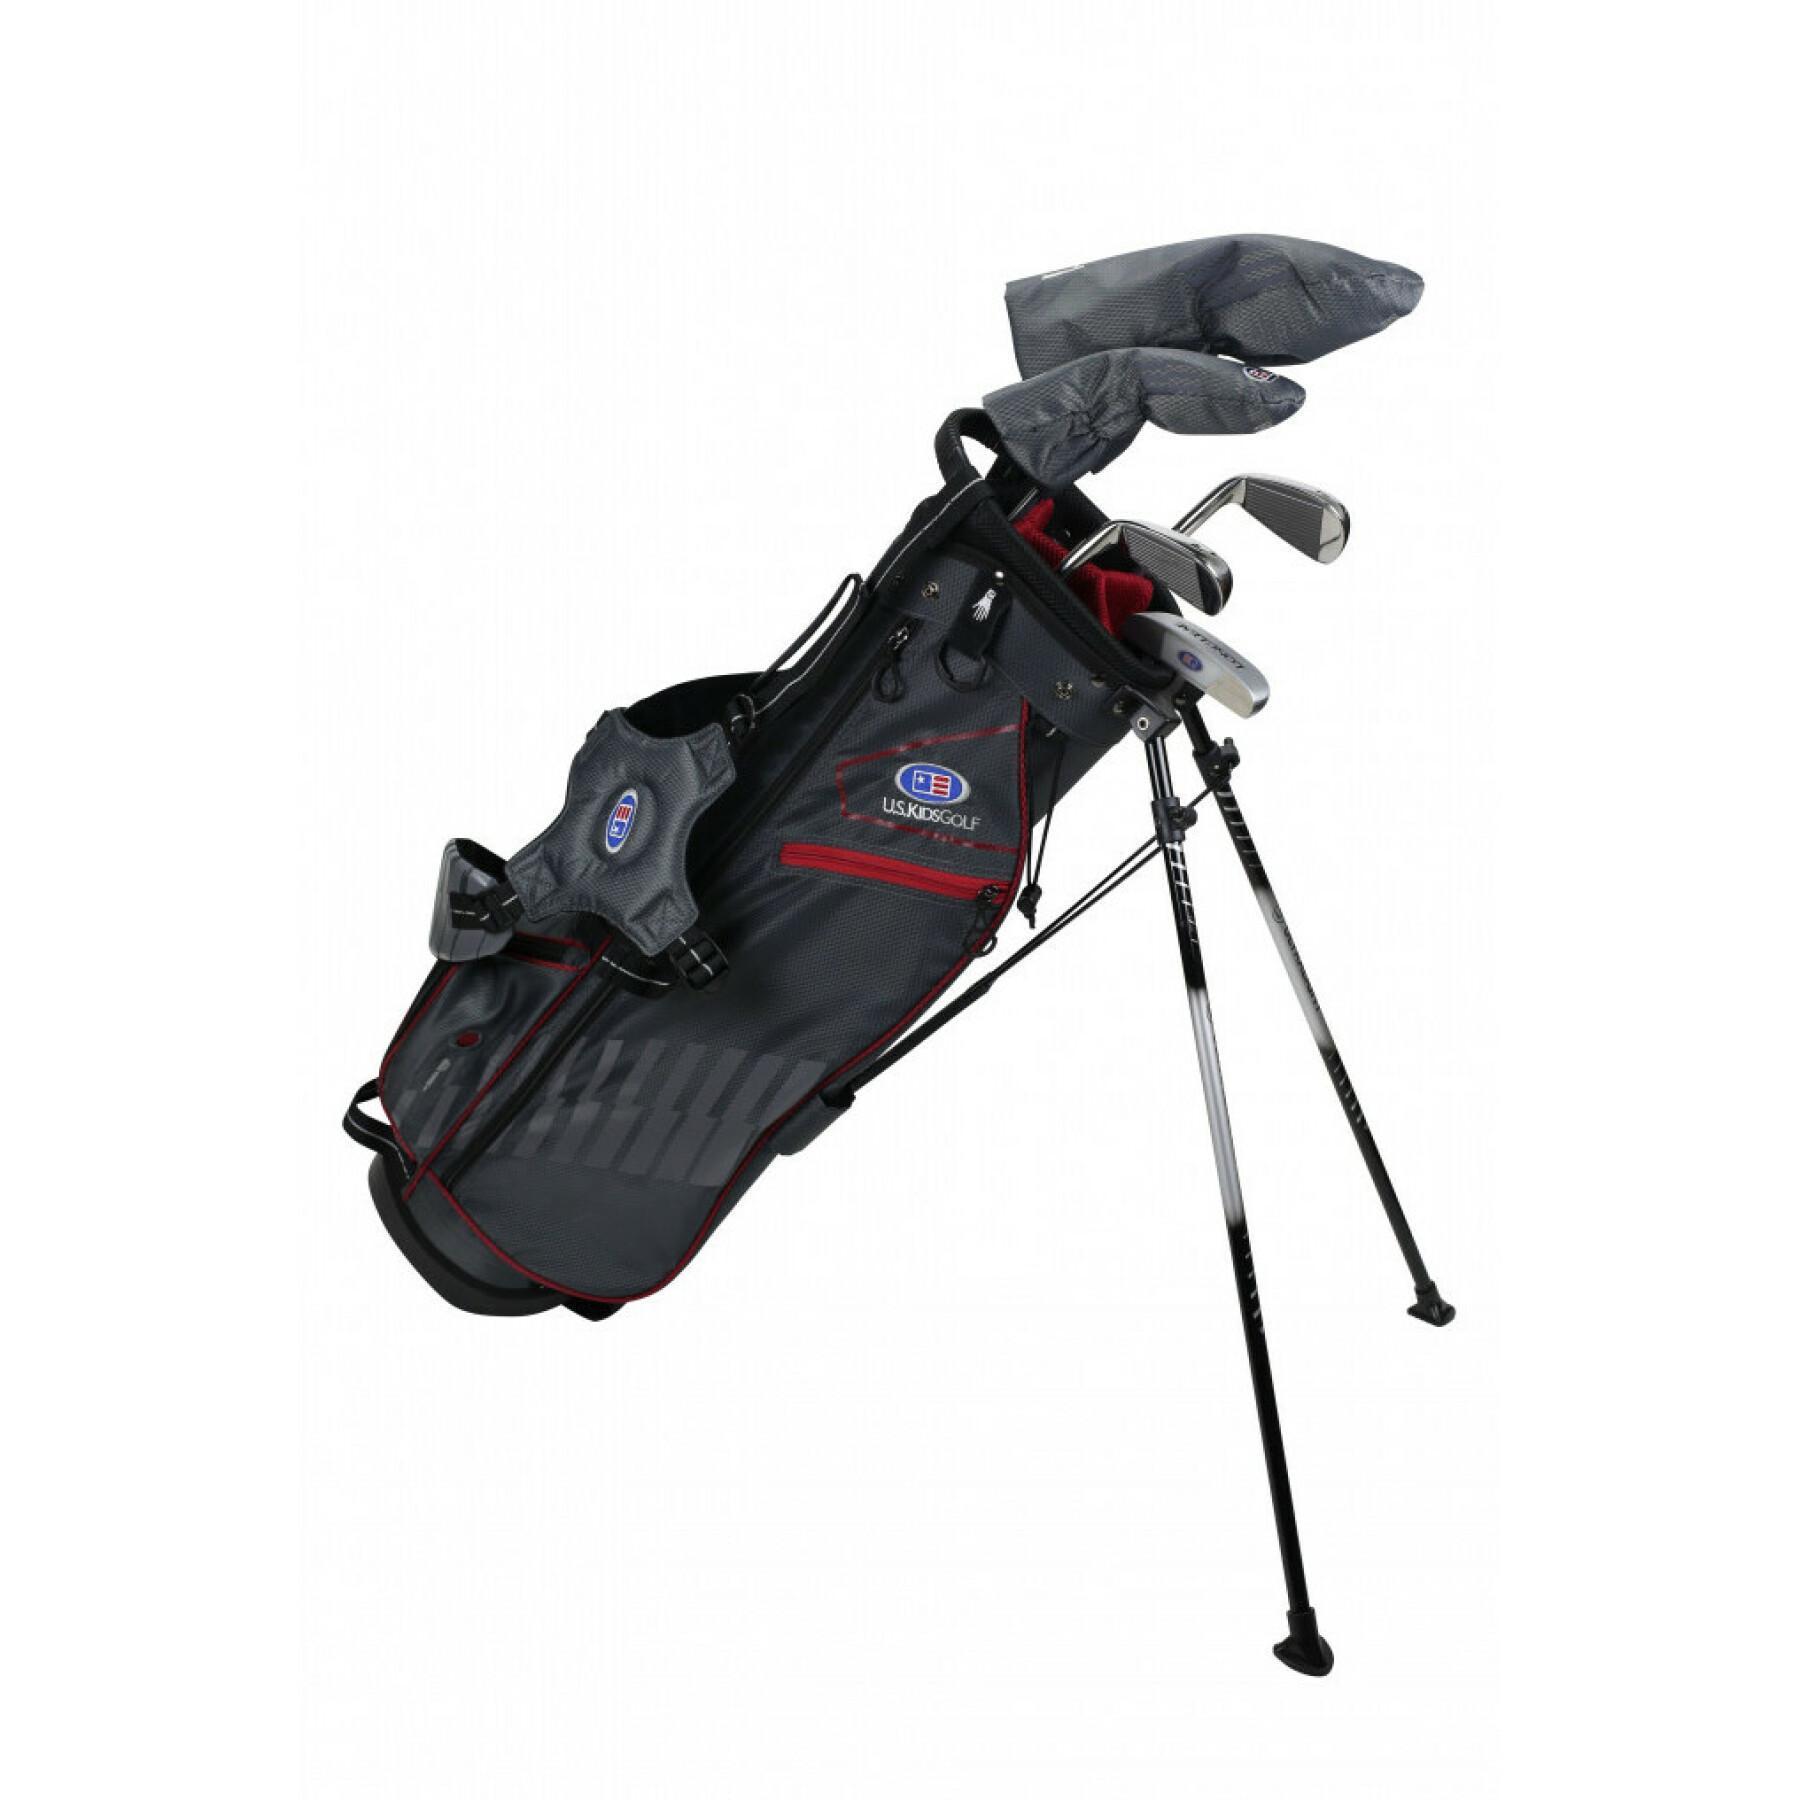 Kit (väska + 5 klubbor) vänsterhänt pojke U.S Kids Golf ultralight us60 2020